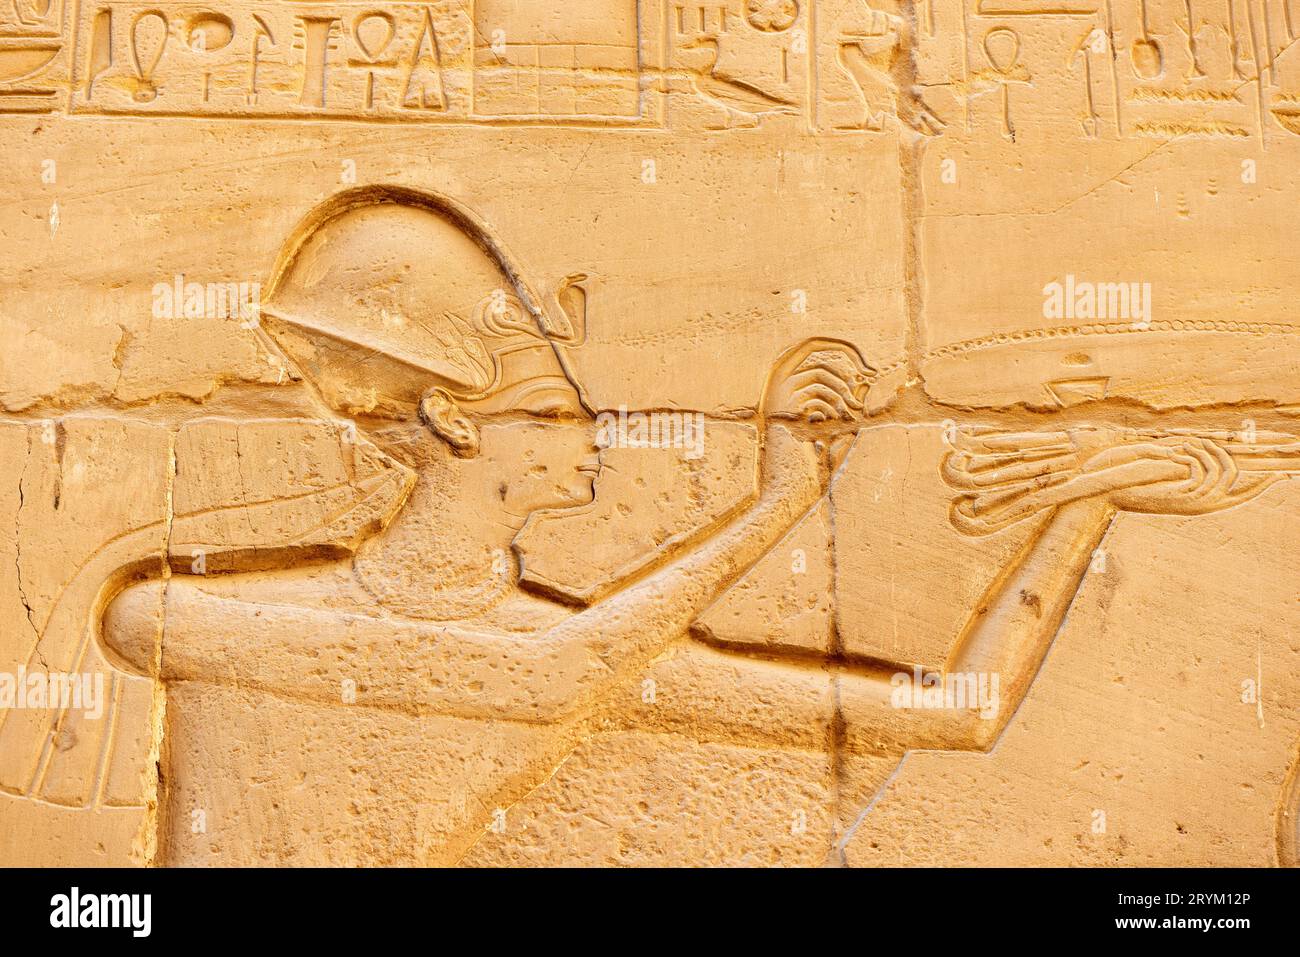 Anciens symboles égyptiens sculptés et hiéroglyphes sur les murs du temple de Karnak, en Égypte Banque D'Images